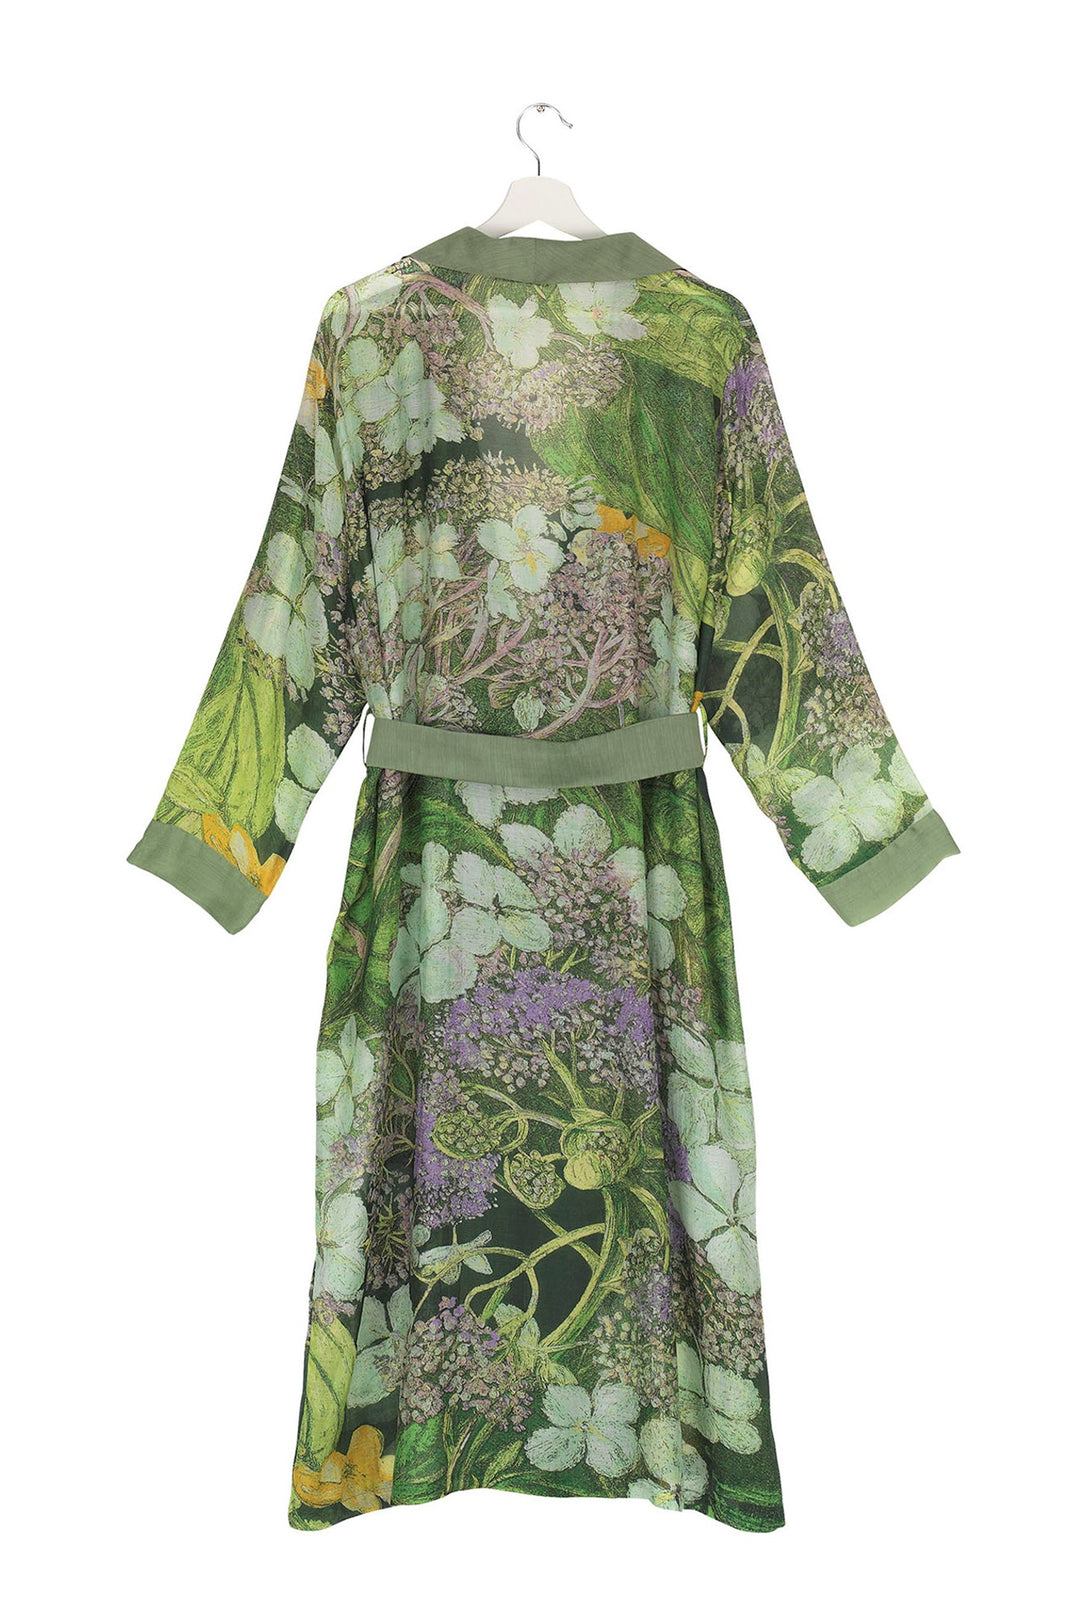 KEW Hydrangea Lime Green Gown